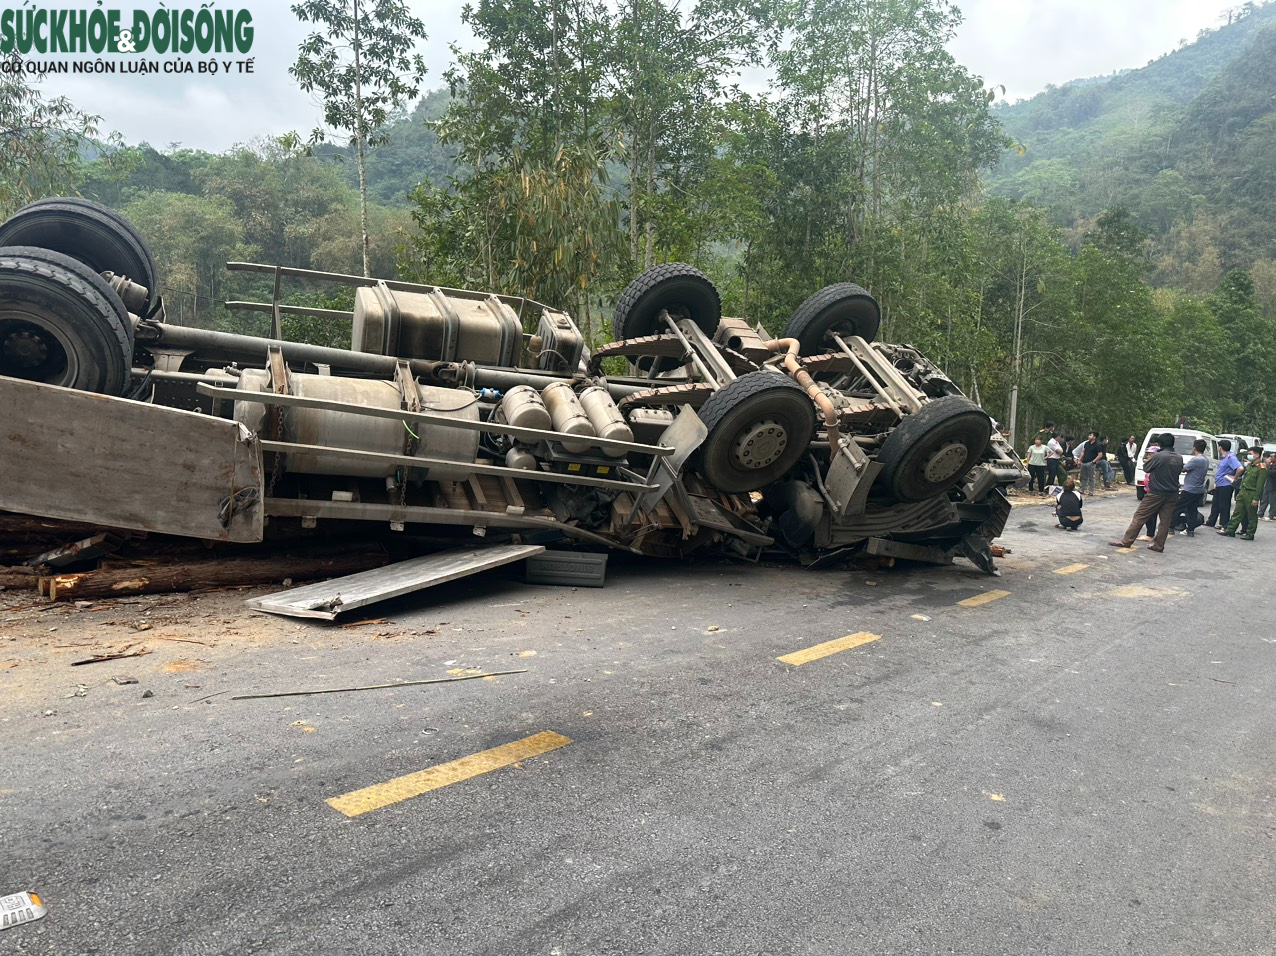 Nguyên nhân vụ lật xe chở gỗ trên quốc lộ khiến 2 người tử vong - Ảnh 4.